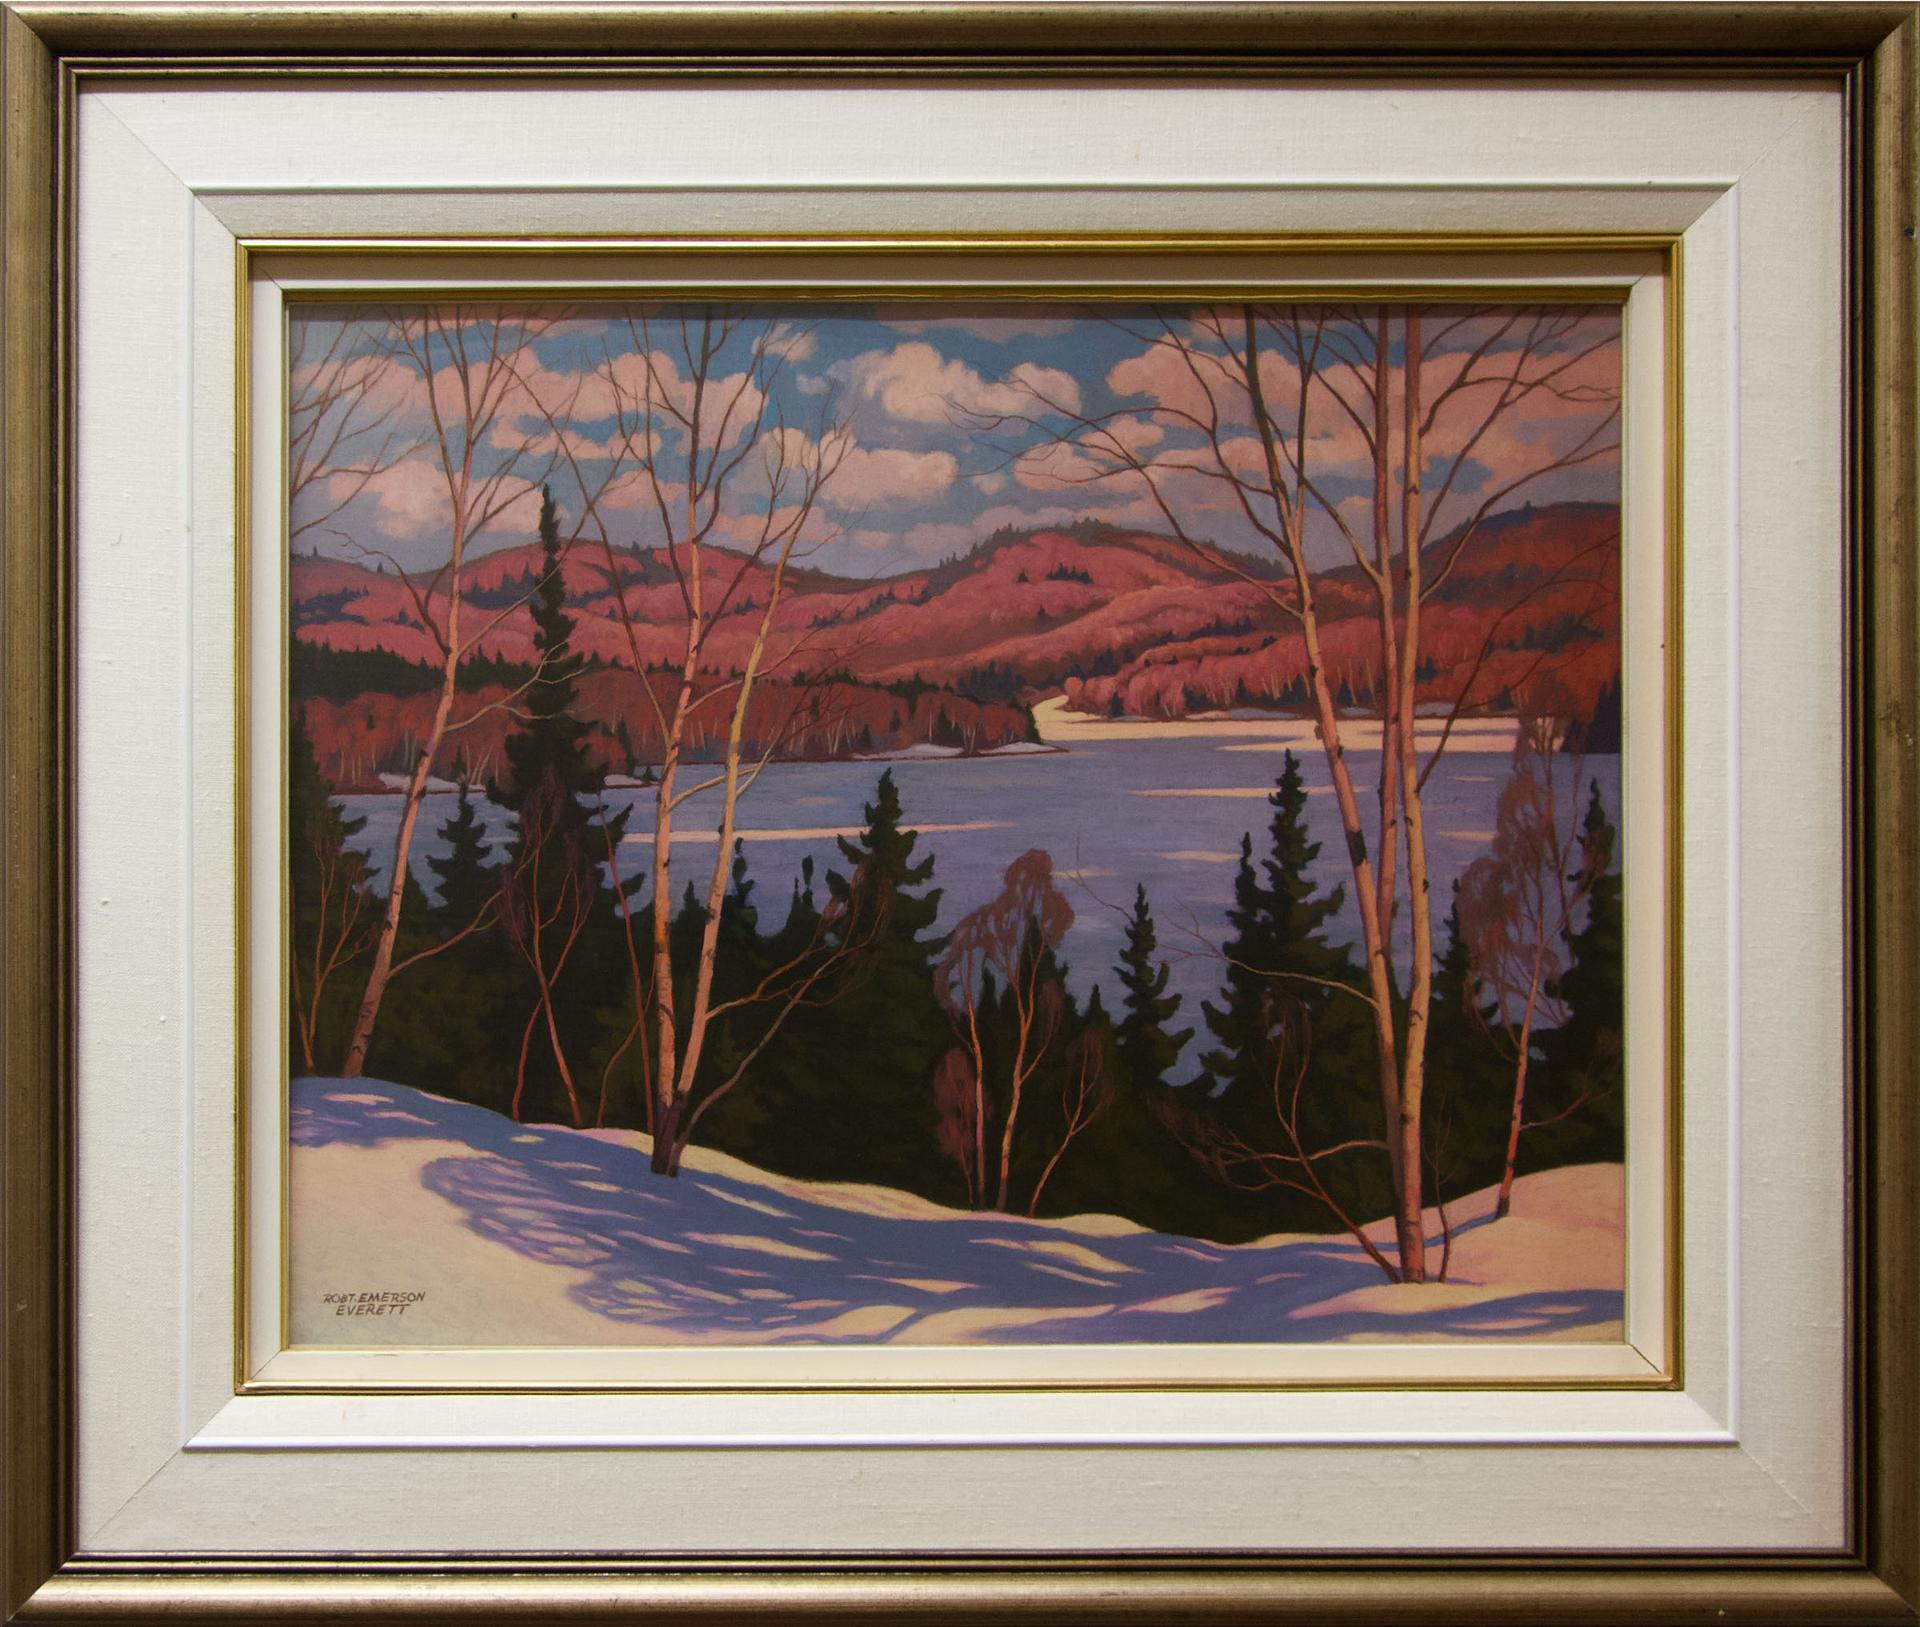 Robert Emerson Everett (1908-1994) - Untitled (Sunlit Winter Landscape Overlooking A Lake)